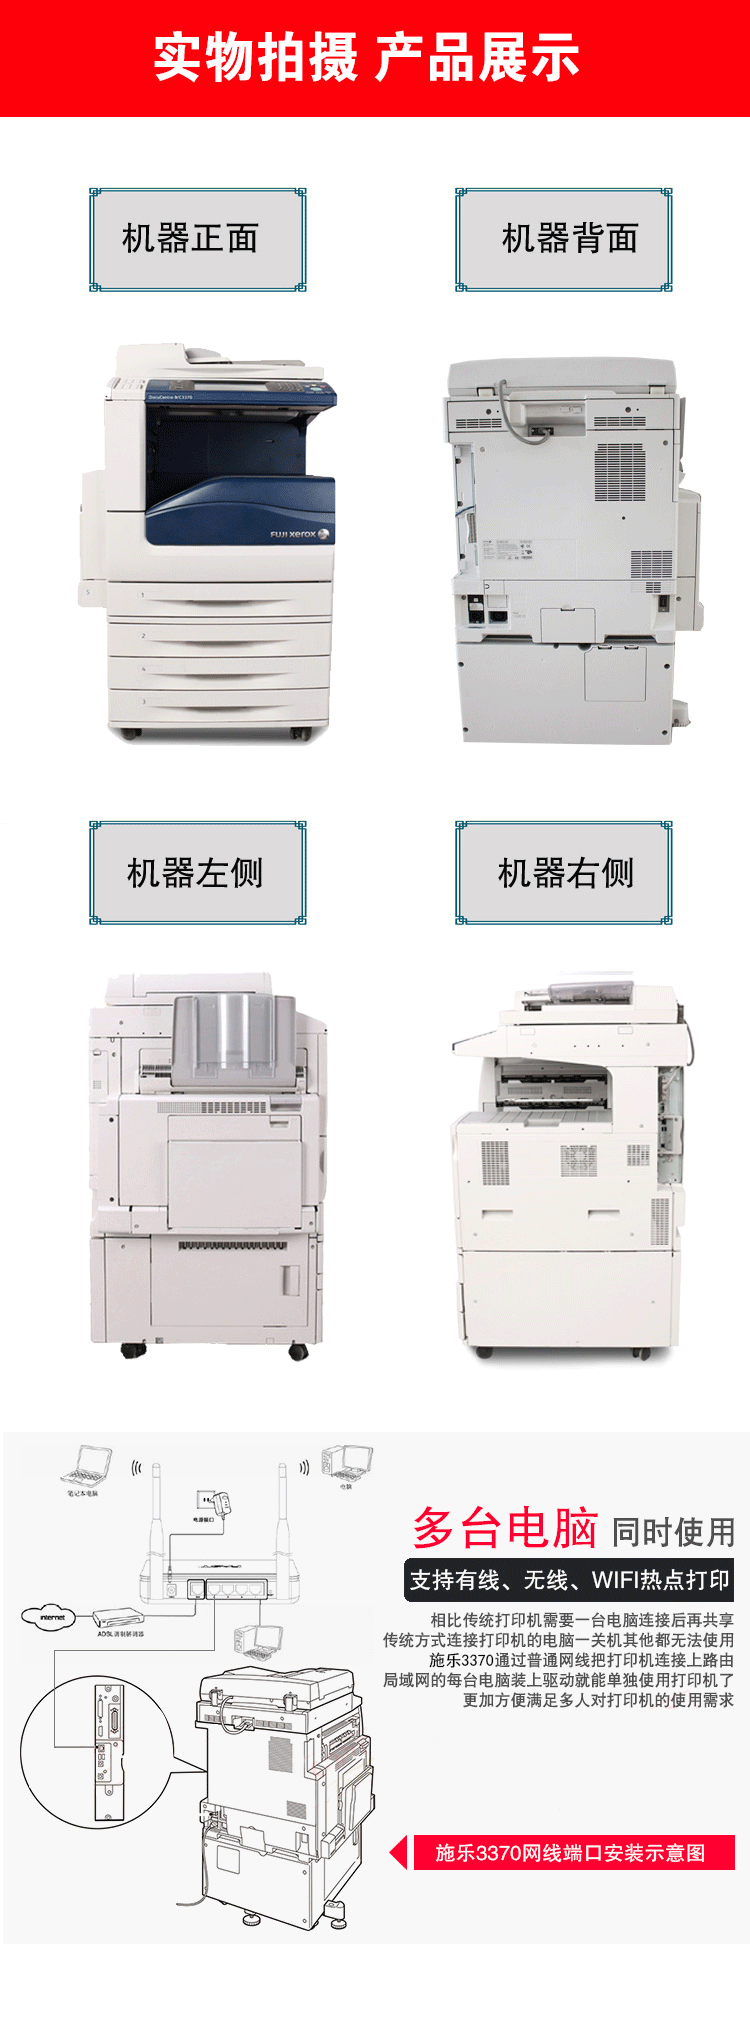 富士施乐C3370CPS彩色数码复印机机实物拍摄展示